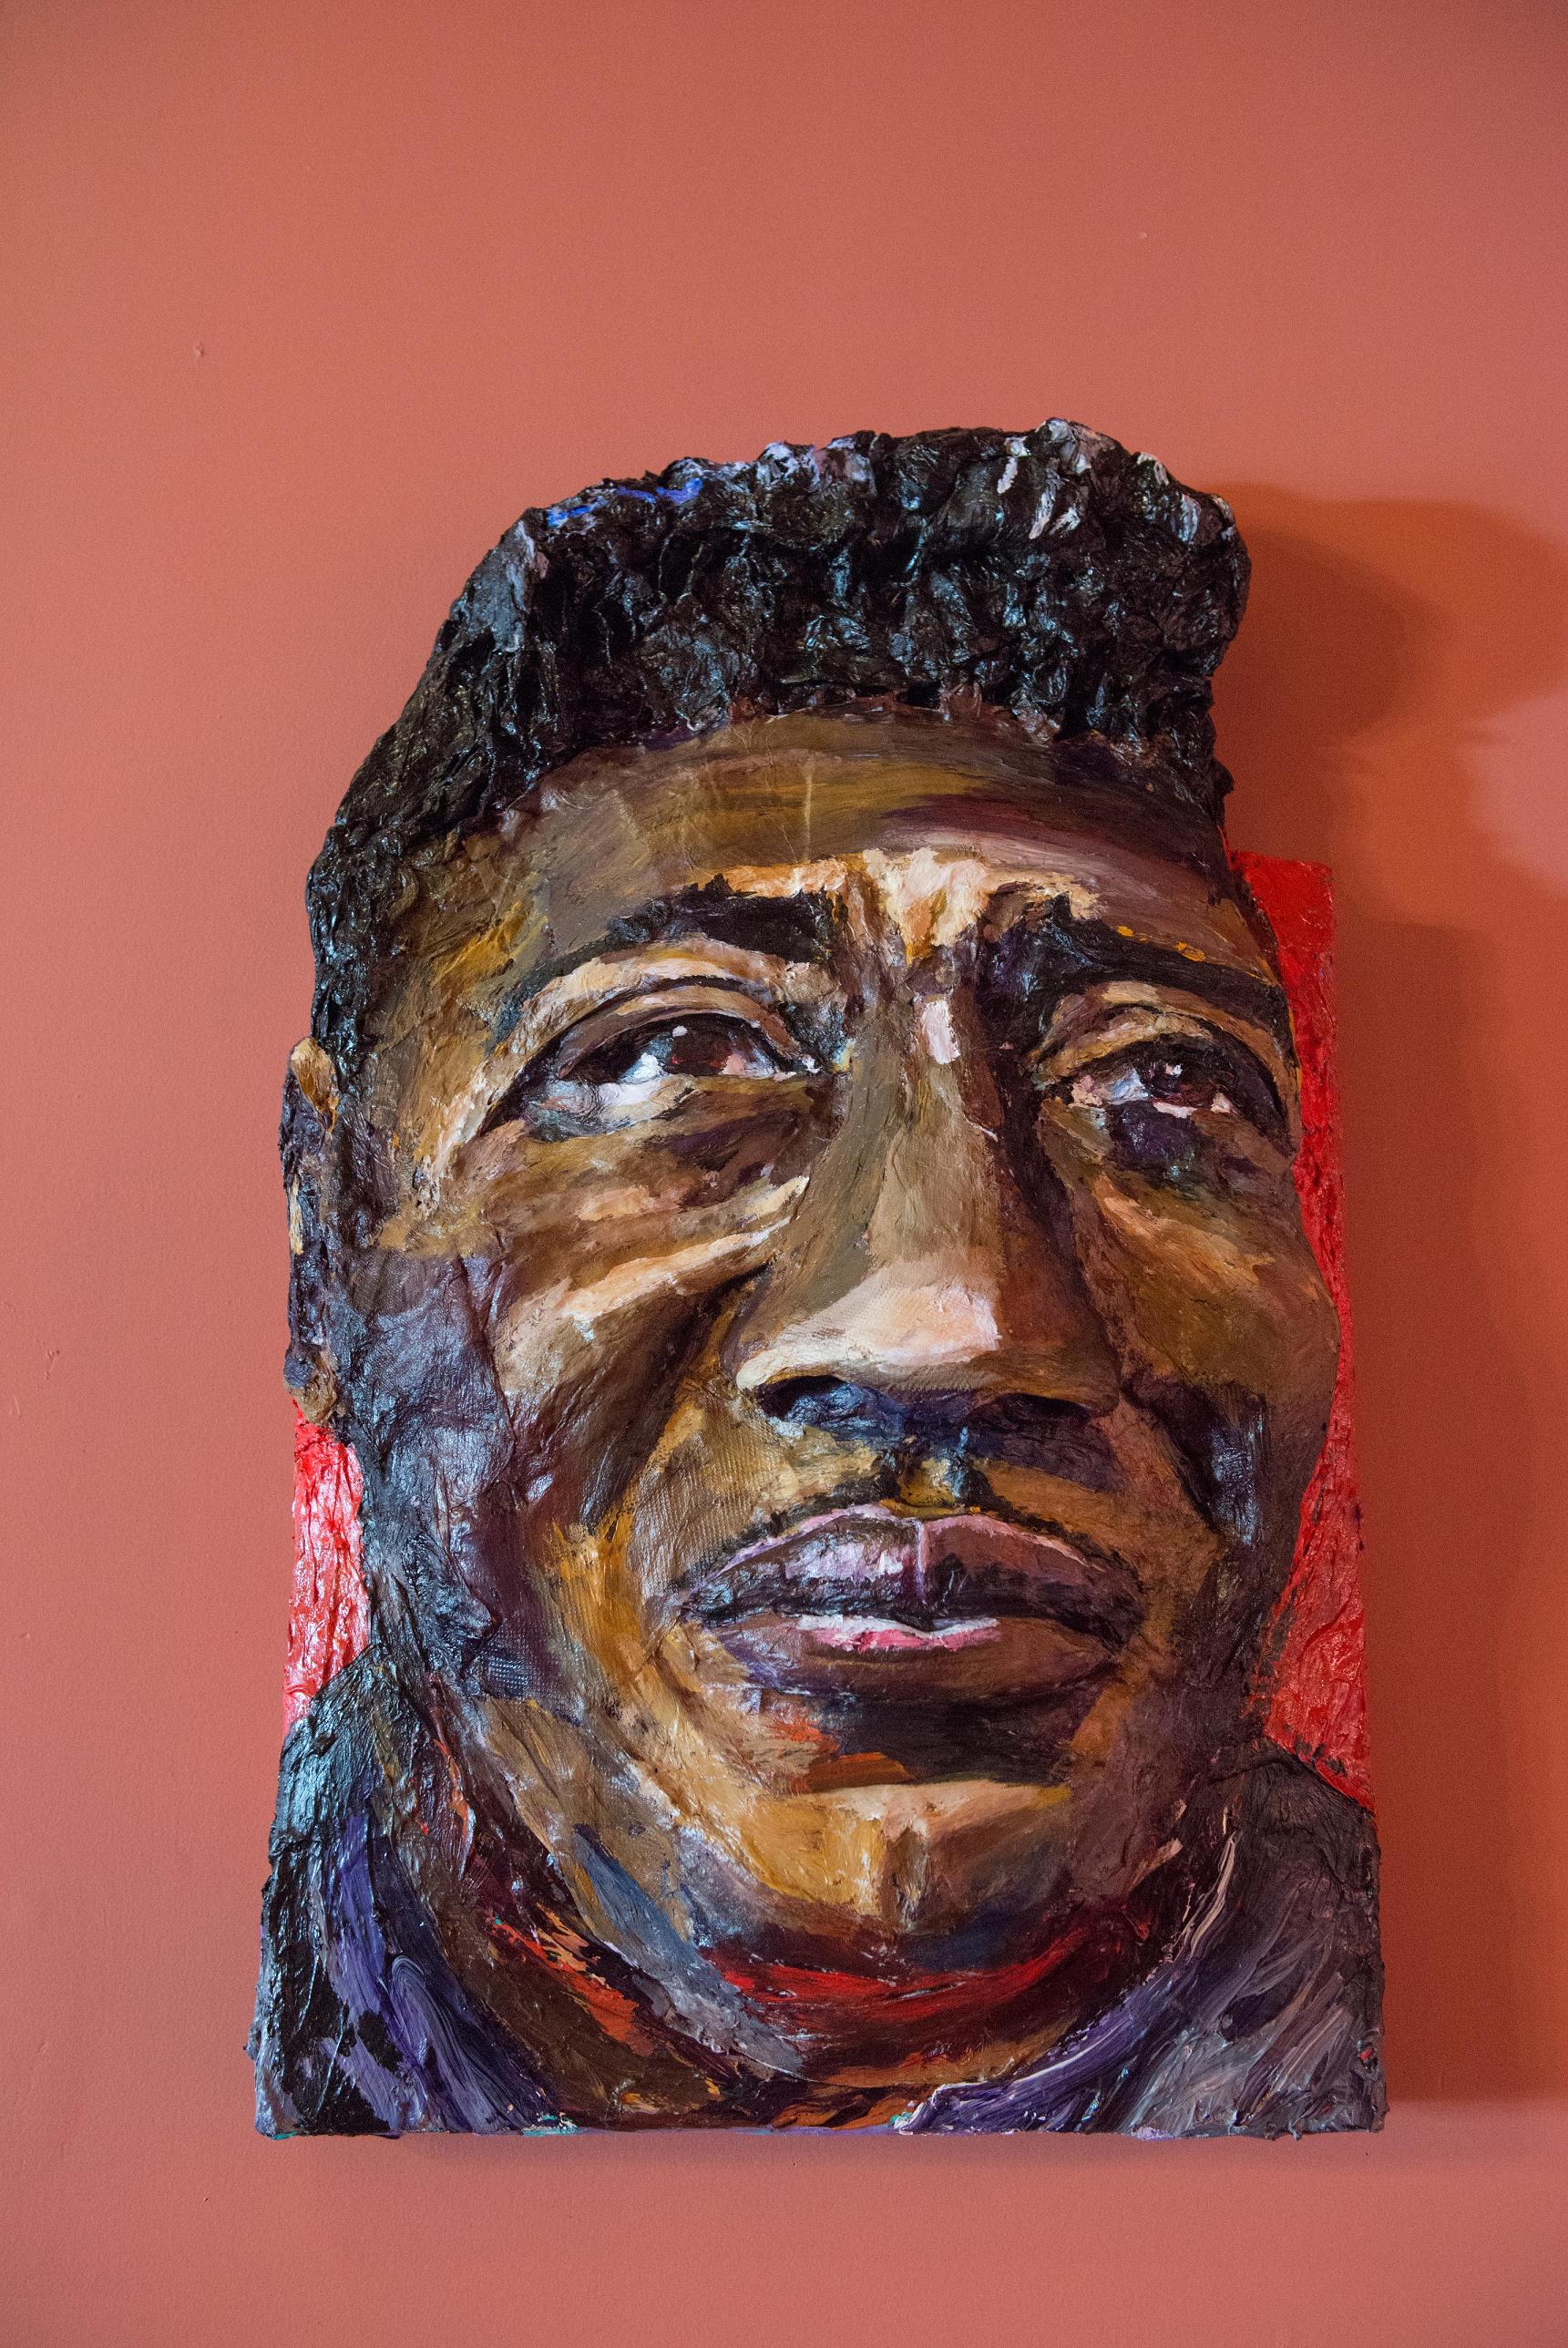 Built-Out Portrait of Muddy Waters by Artist Brett Stuart Wilson